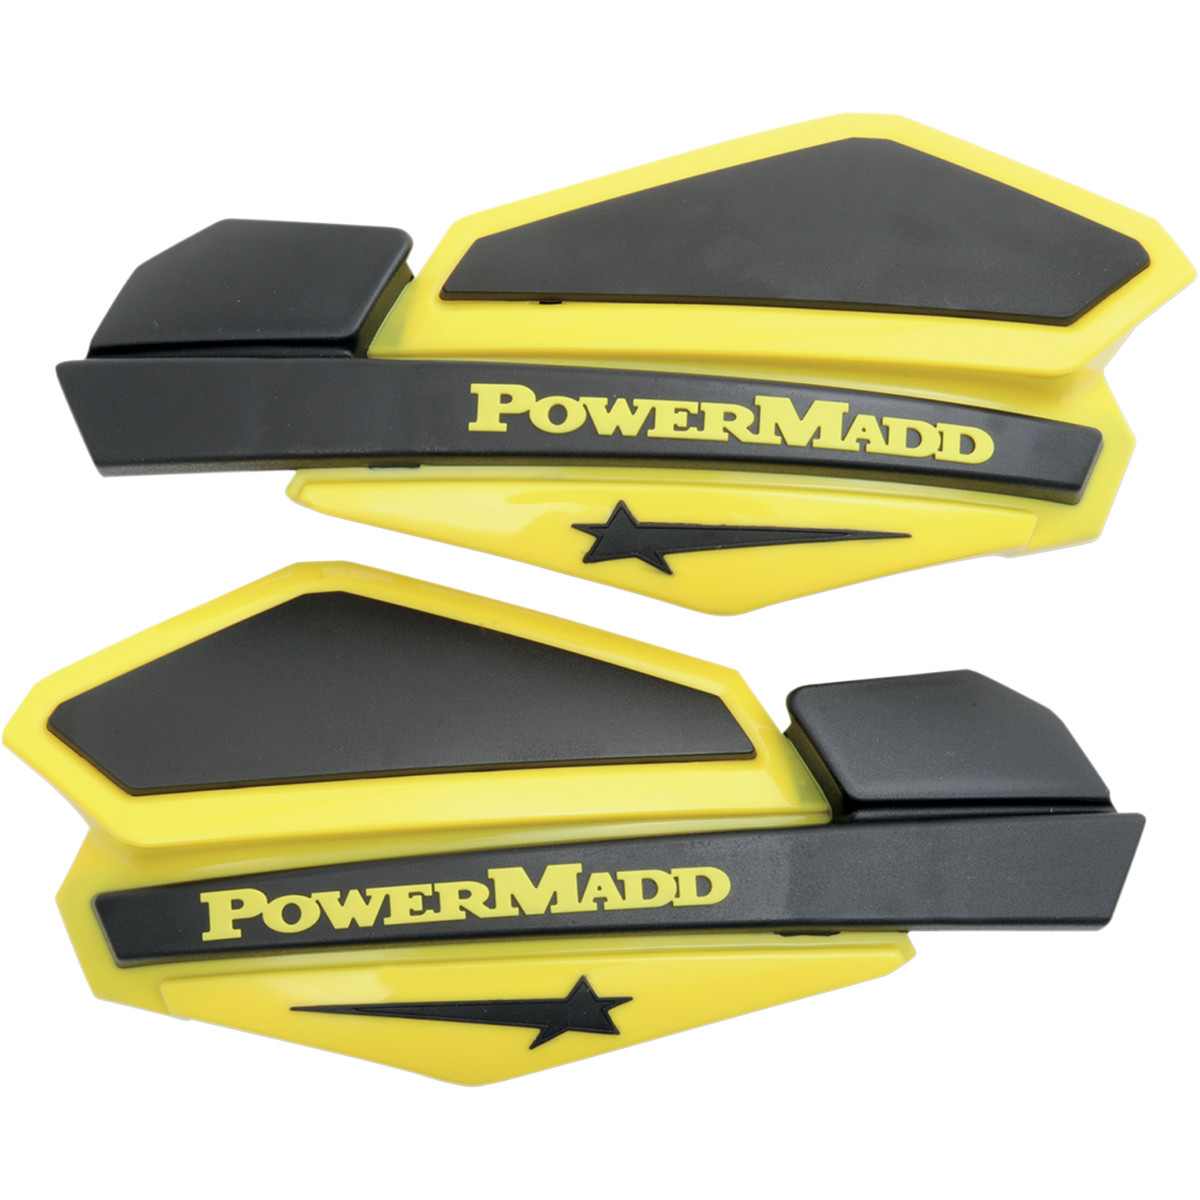 Ochranné kryty rúk Powermadd Star Series (žlté/čierne)